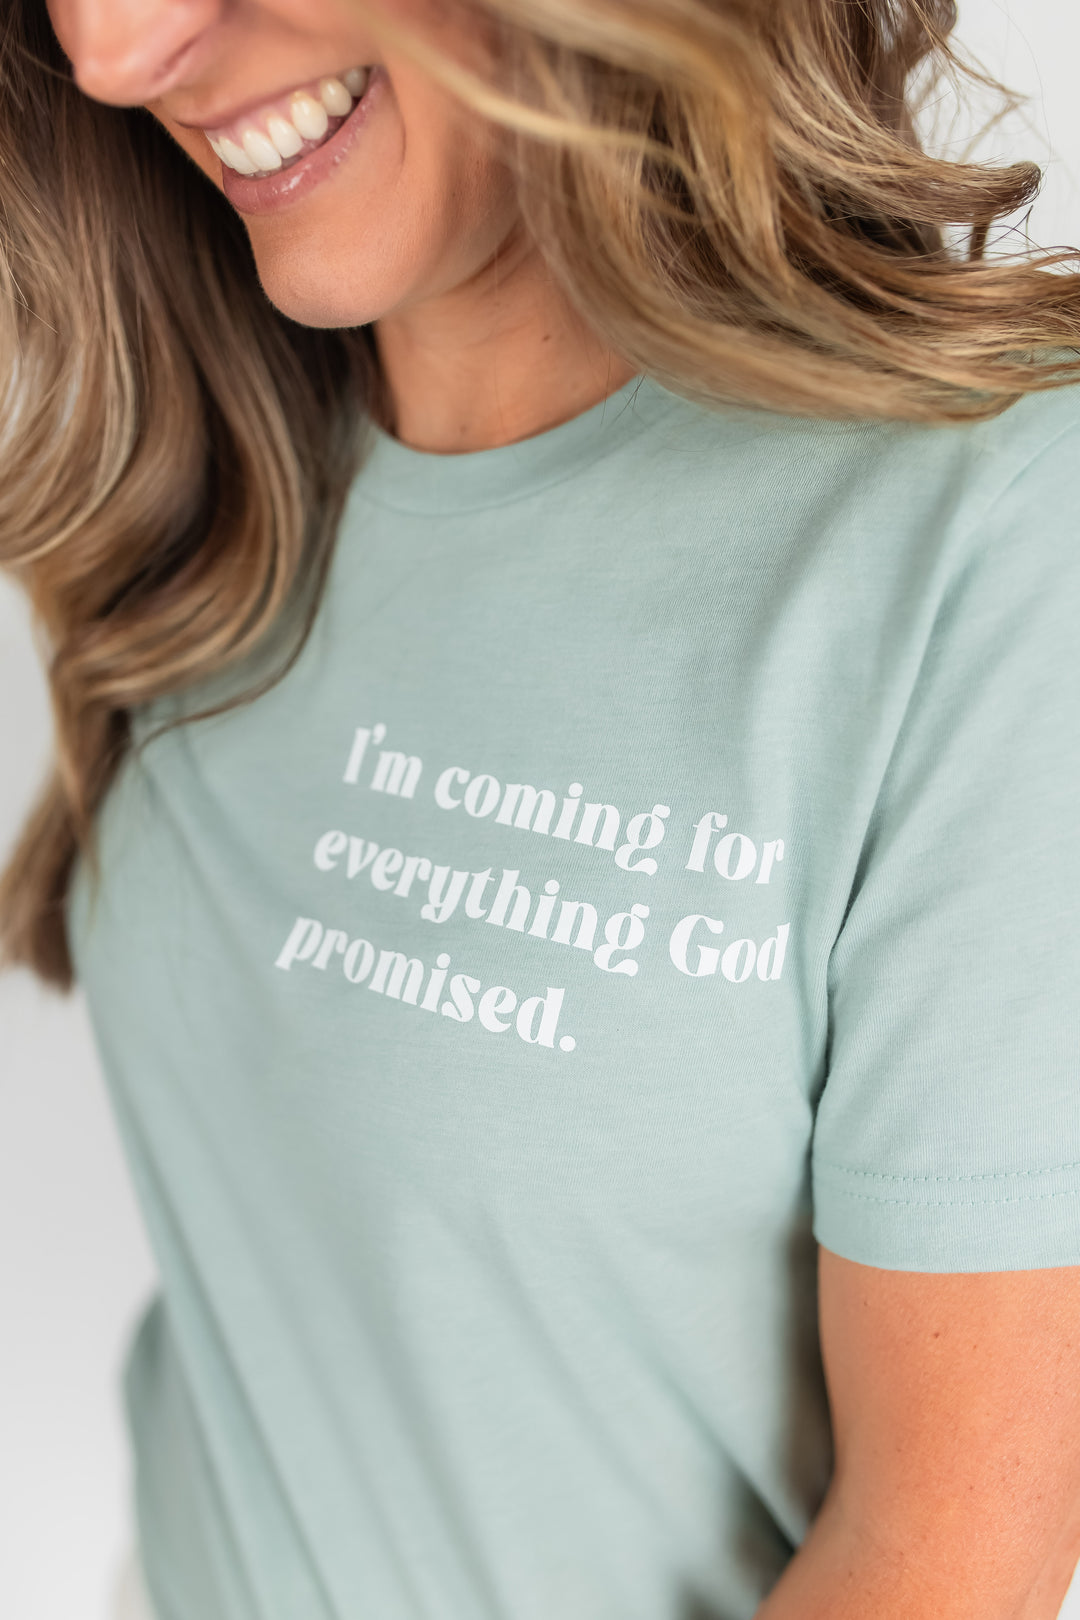 The God's Promise Tee